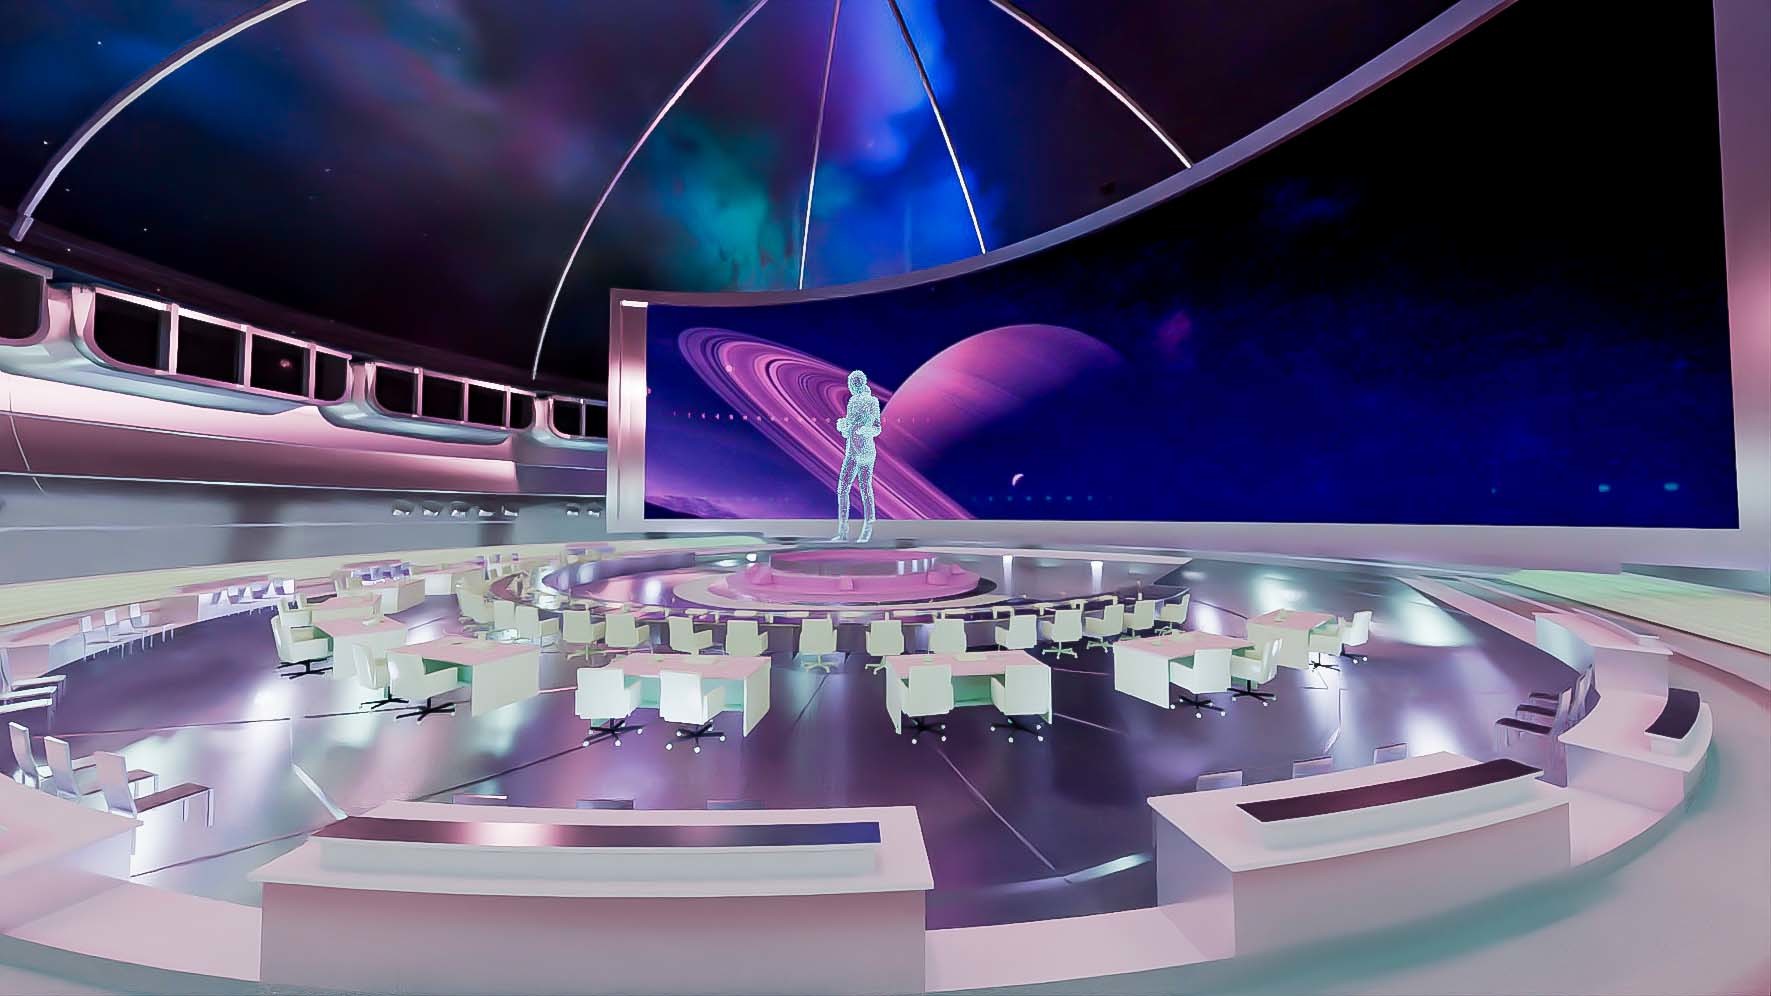 这是一张科幻风格的图片，展示了一个宇宙主题的室内环境，中心有人物立像，周围是现代化座椅和窗外的星际景象。